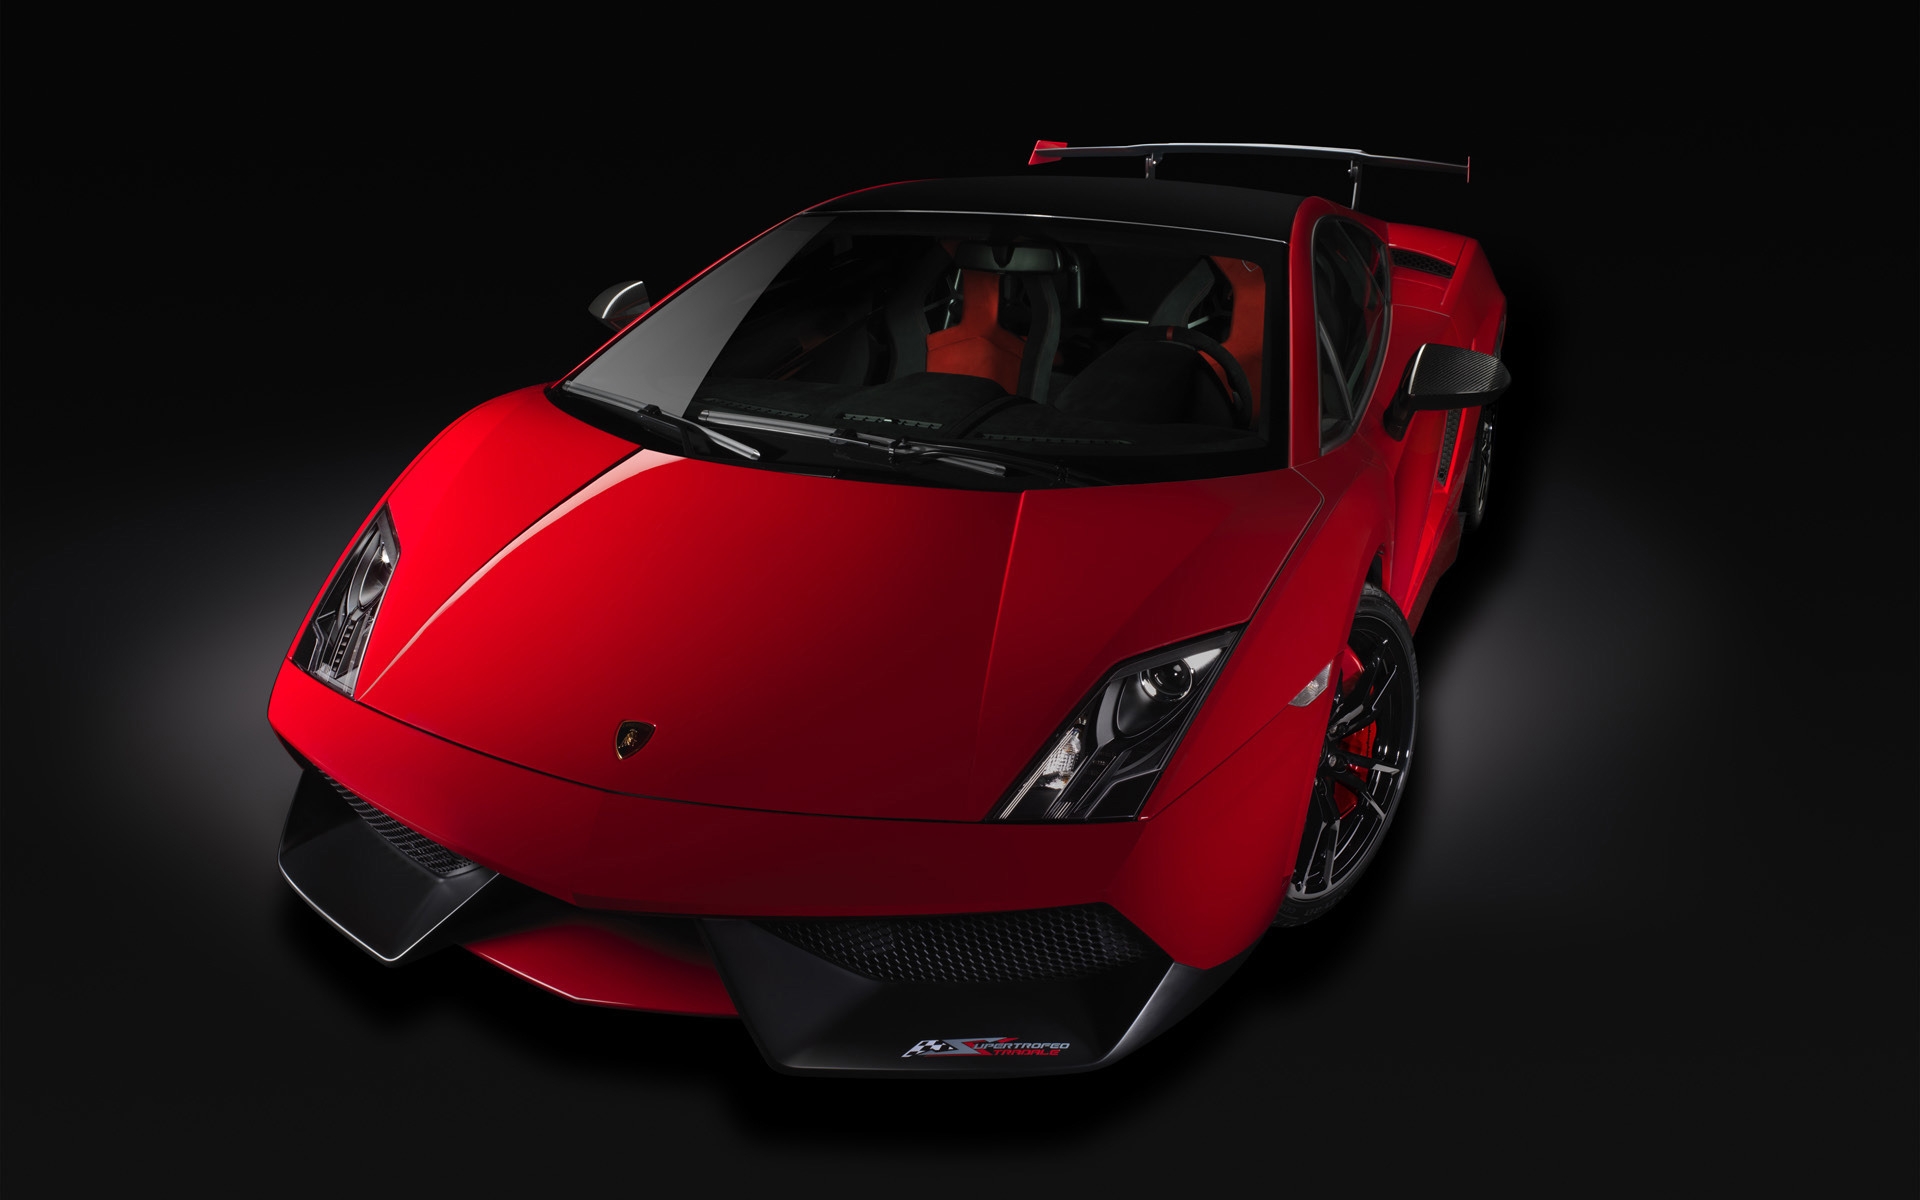 Lamborghini Gallardo Stradale 2012 for 1920 x 1200 widescreen resolution